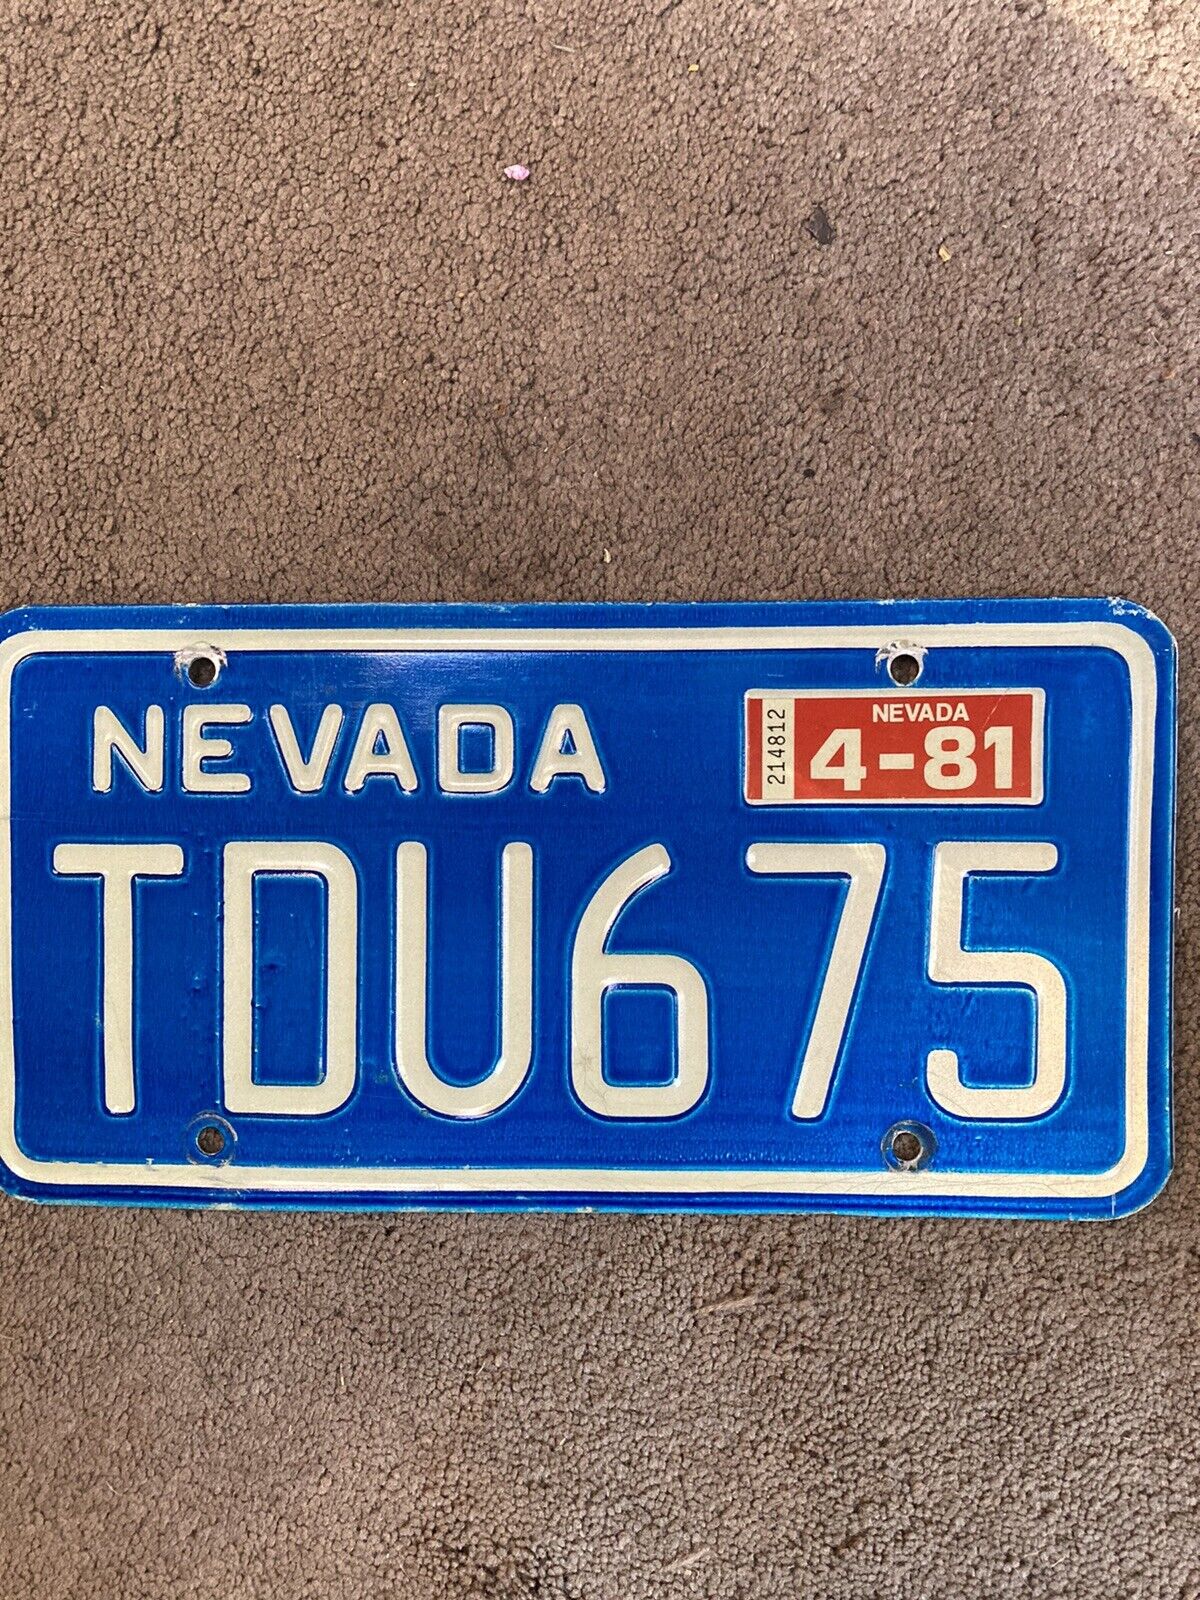 1981 Nevada Debossed License Plate - TDU 675 - Nice Natural